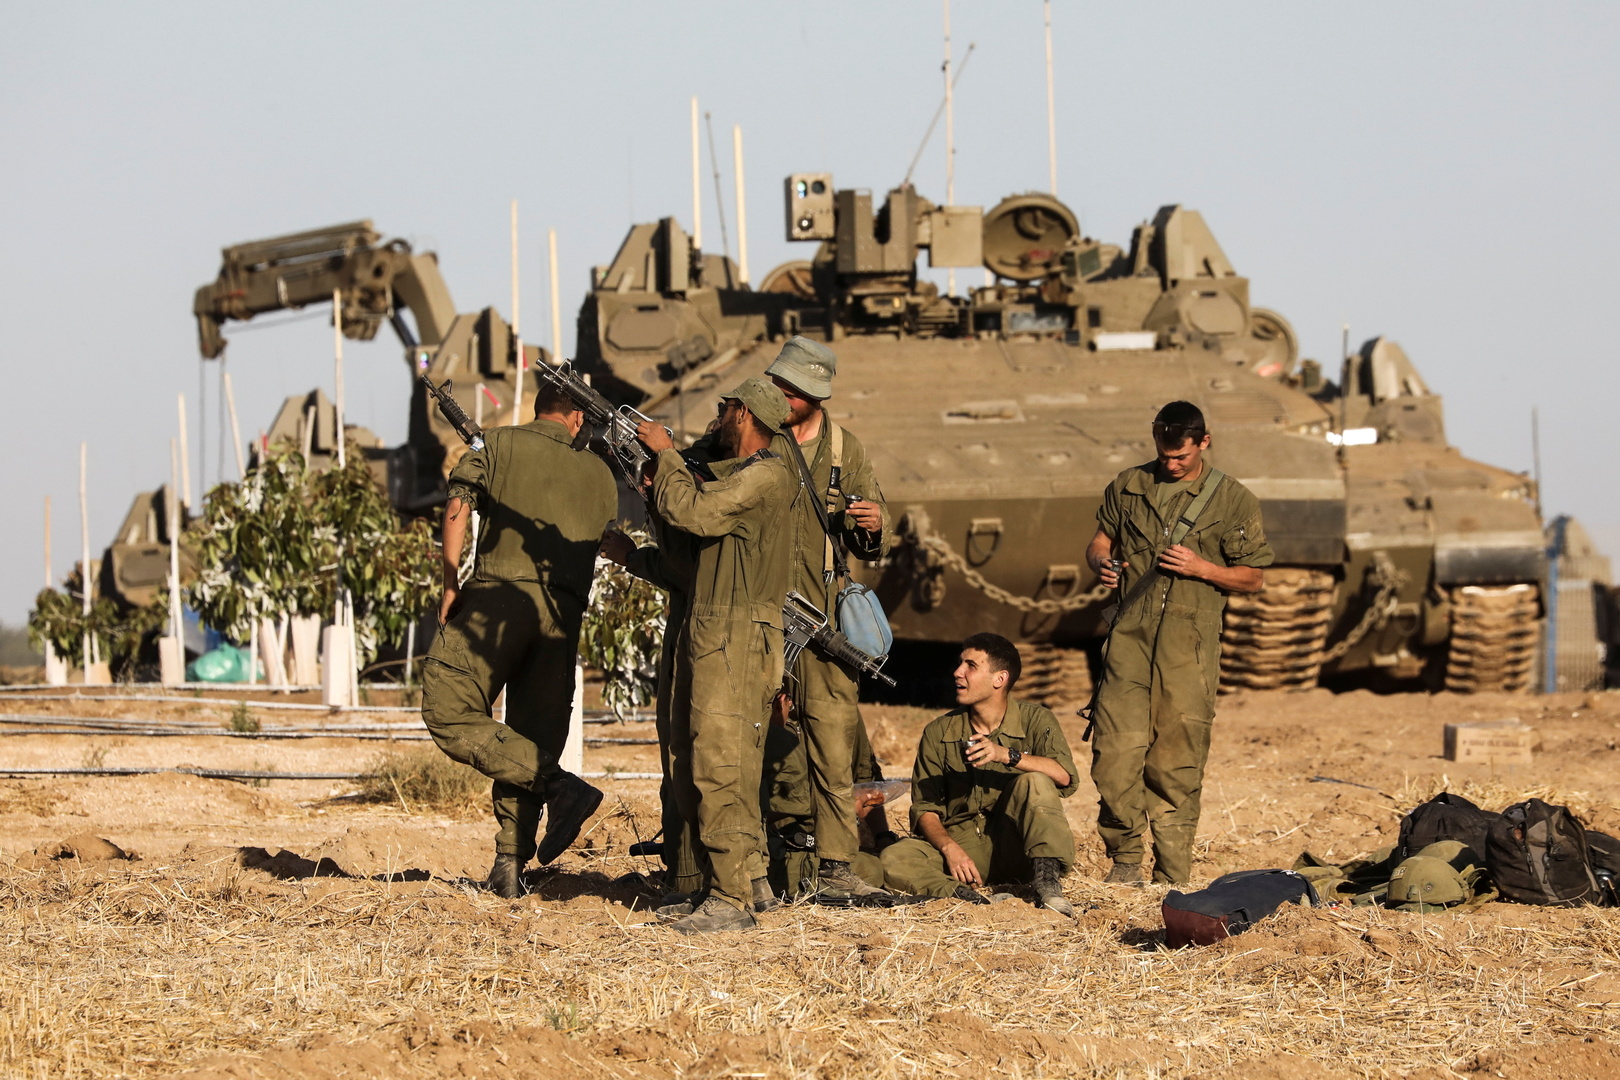 صحيفة: دول التحالف استخدمت أسلحة إسرائيلية الصنع خلال 20 عاما ضد حركة 